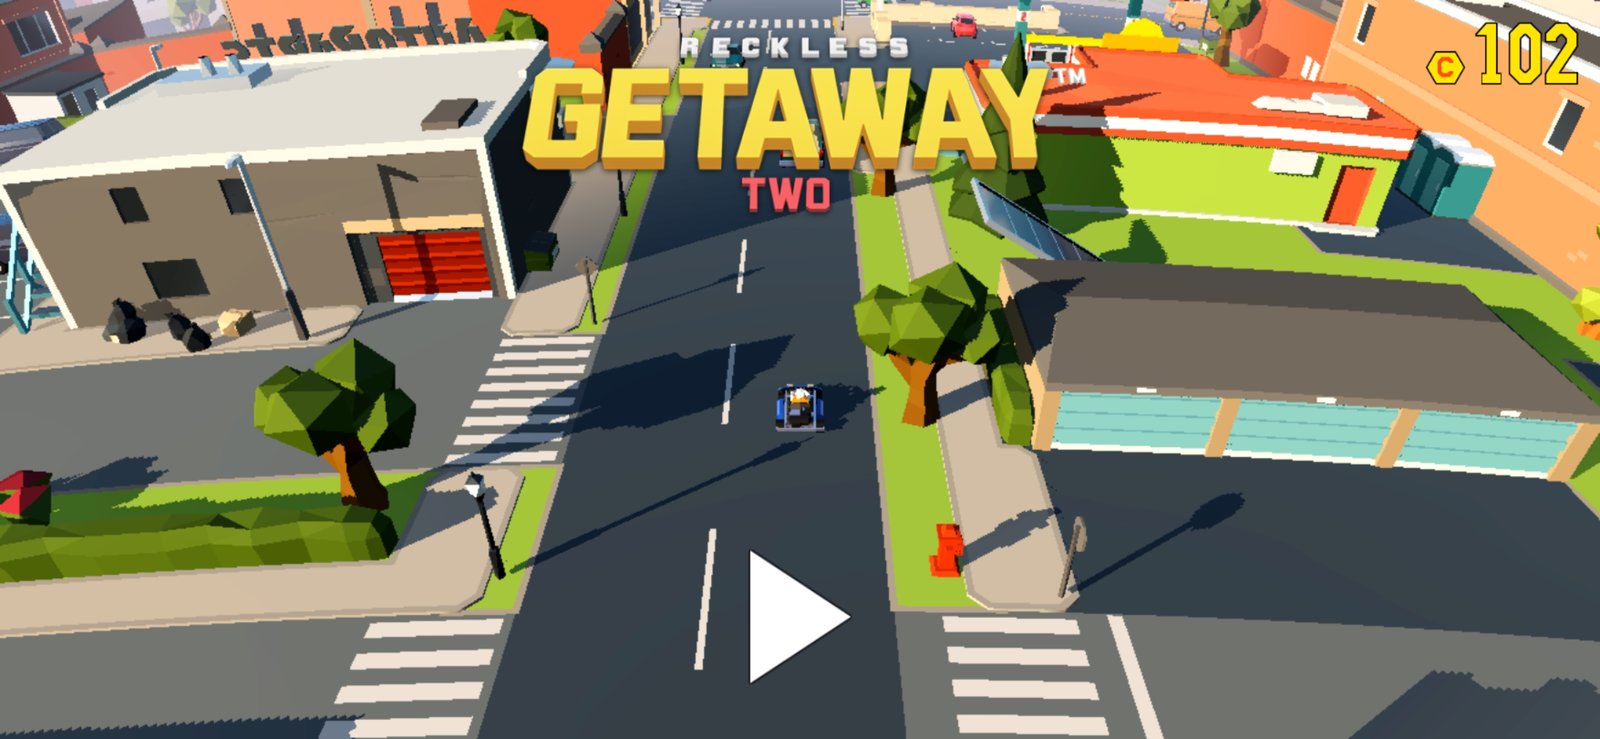 Como faço download de Reckless Getaway 2 no meu celular